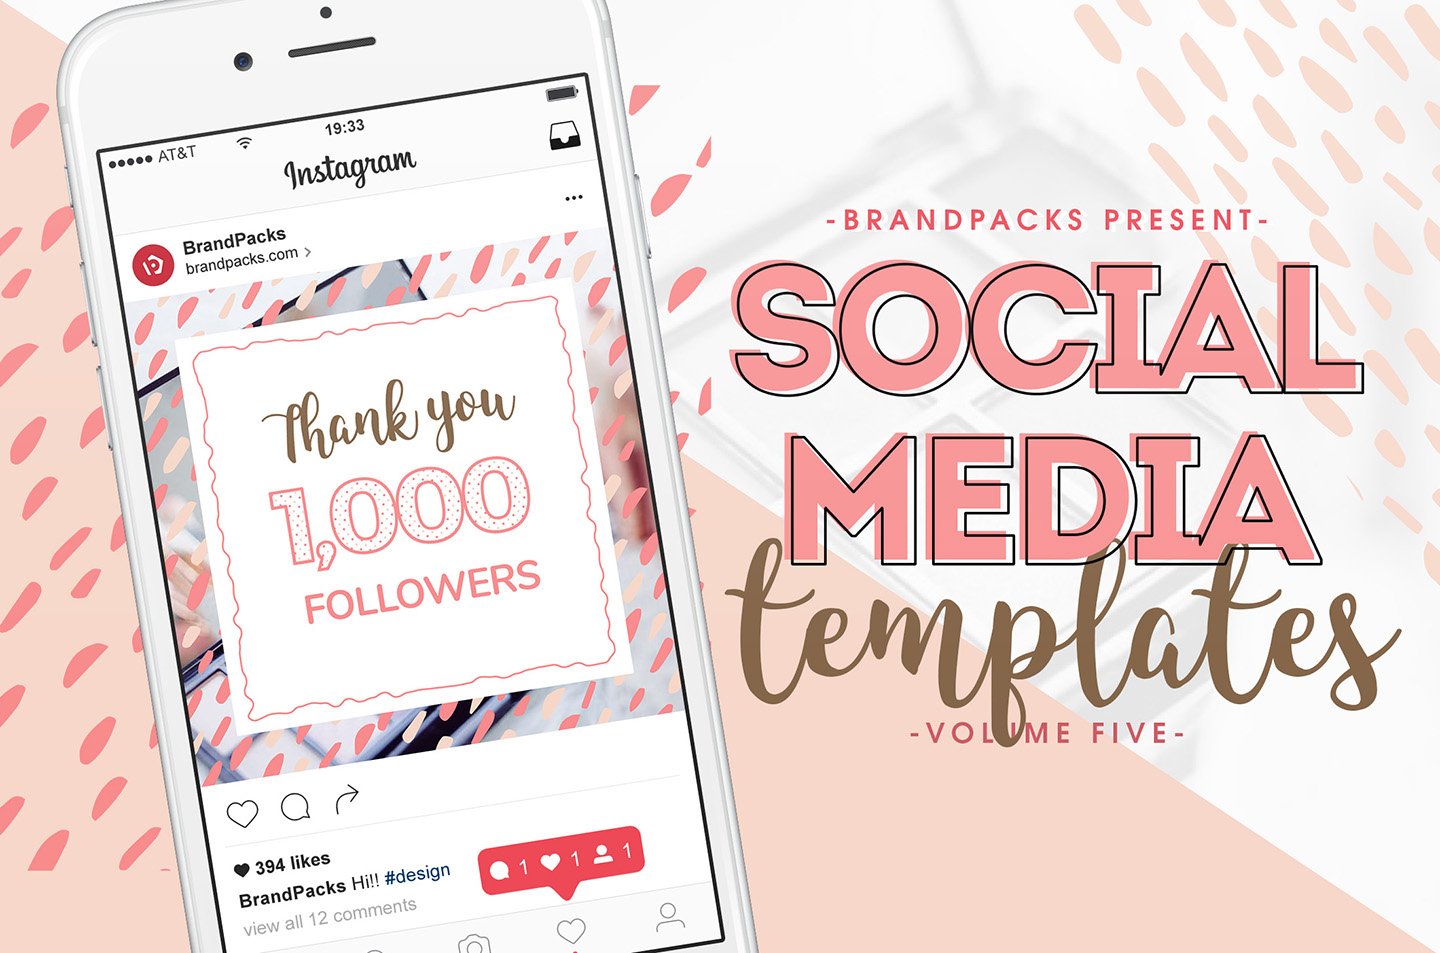 粉色系女性化妆品服装电商营销海报Instagram模板 Social Media Templates Pack Vol.5插图